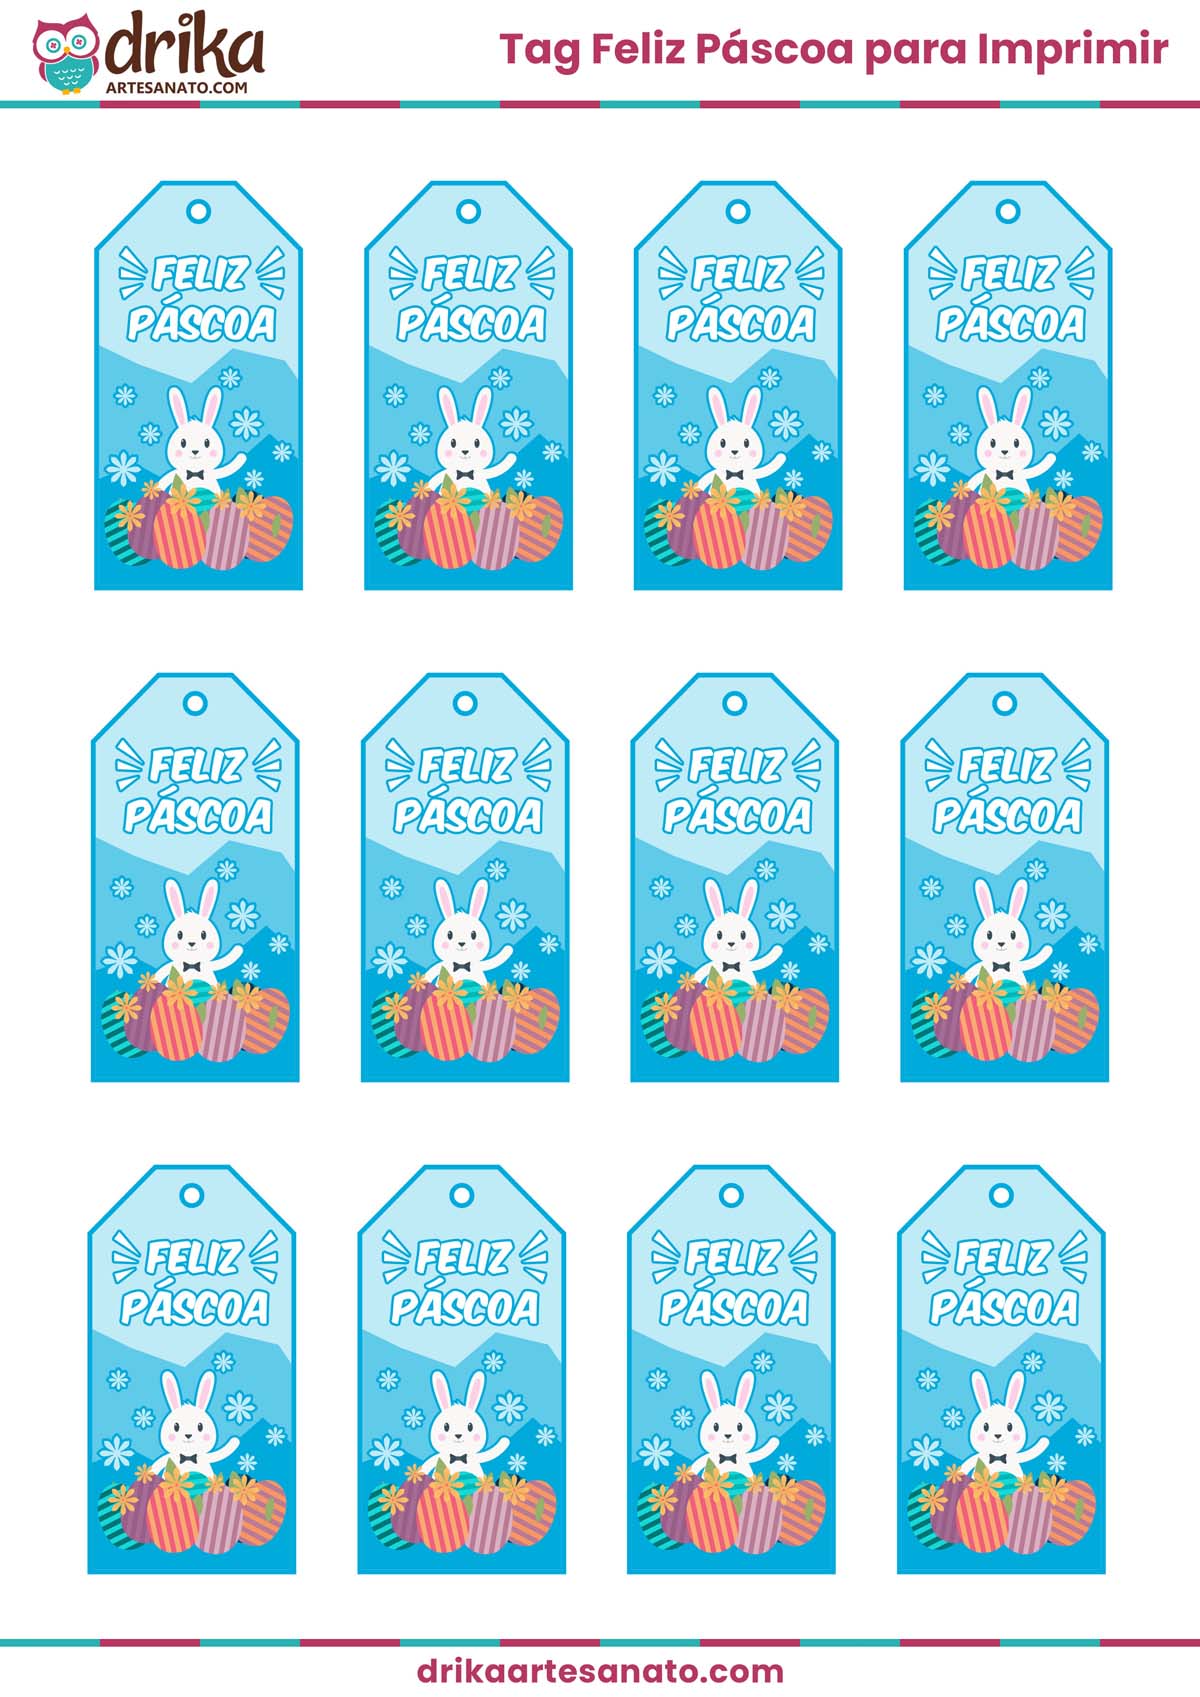 Personalize sua Páscoa com nossas Tags Feliz Páscoa em tamanho natural para imprimir!